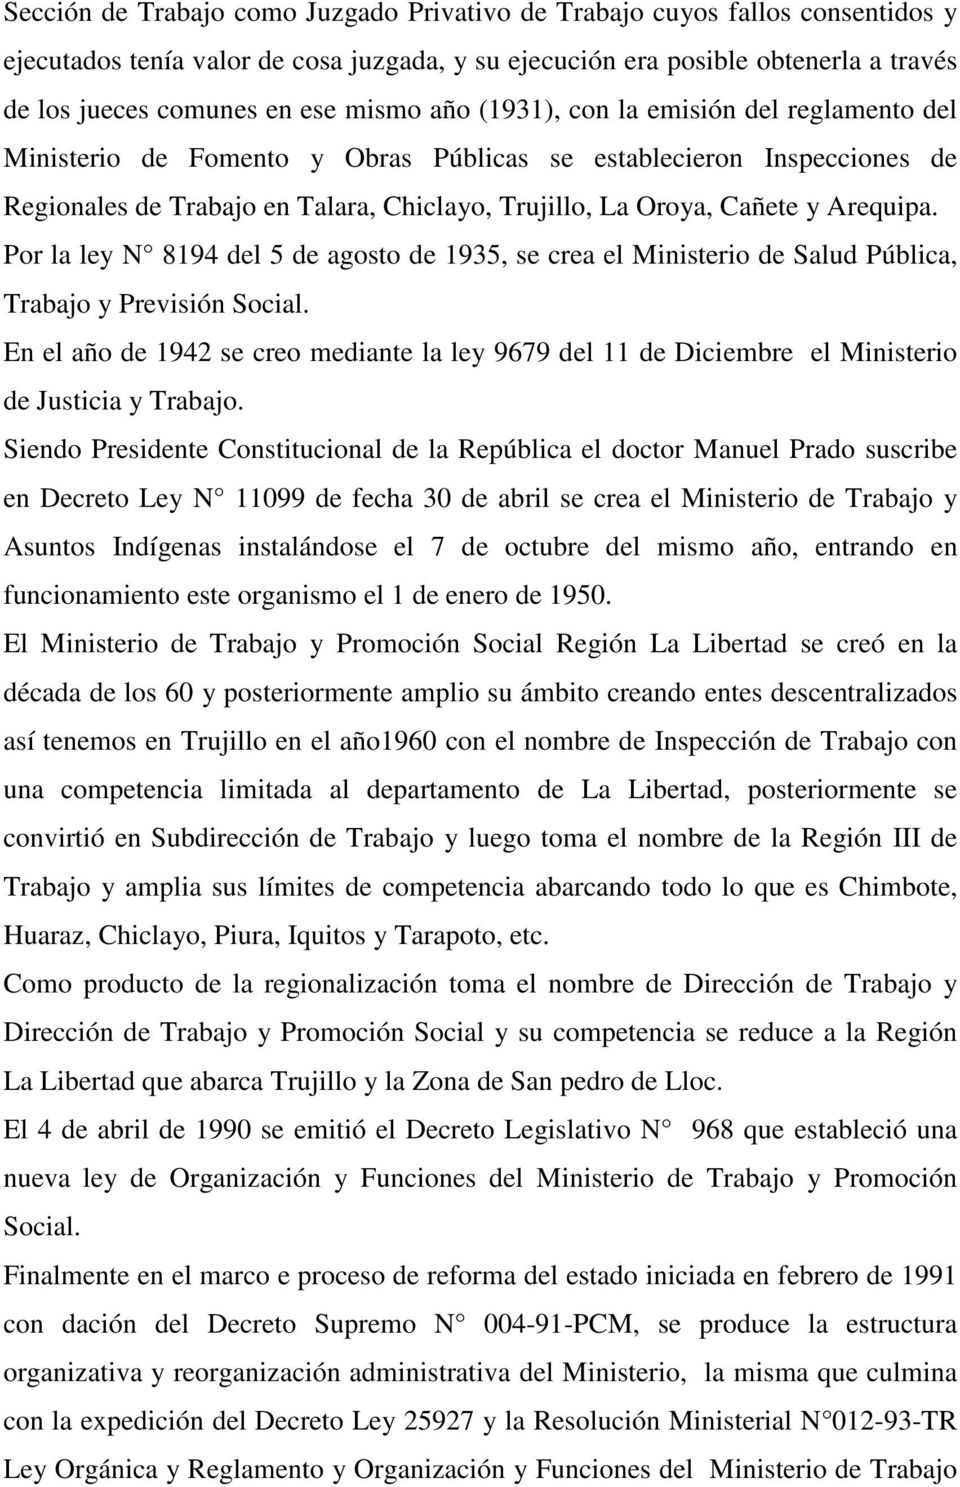 Arequipa. Por la ley N 8194 del 5 de agosto de 1935, se crea el Ministerio de Salud Pública, Trabajo y Previsión Social.